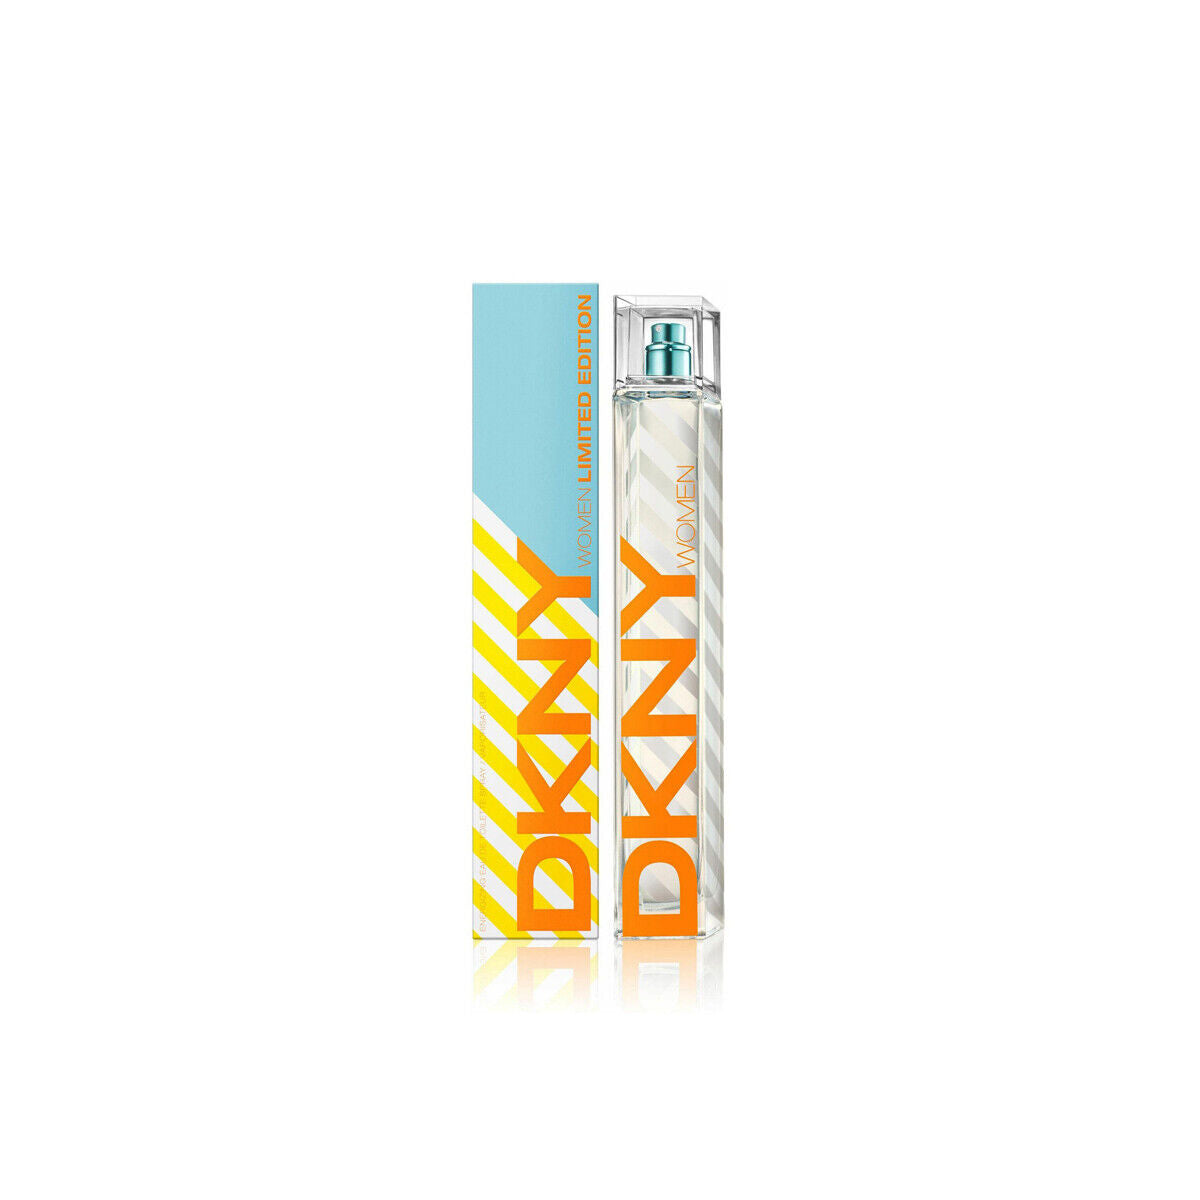 Donna Karan DKNY Energizing EDT Spray Women Limited Edition 3.4oz/100ml NIB Seal